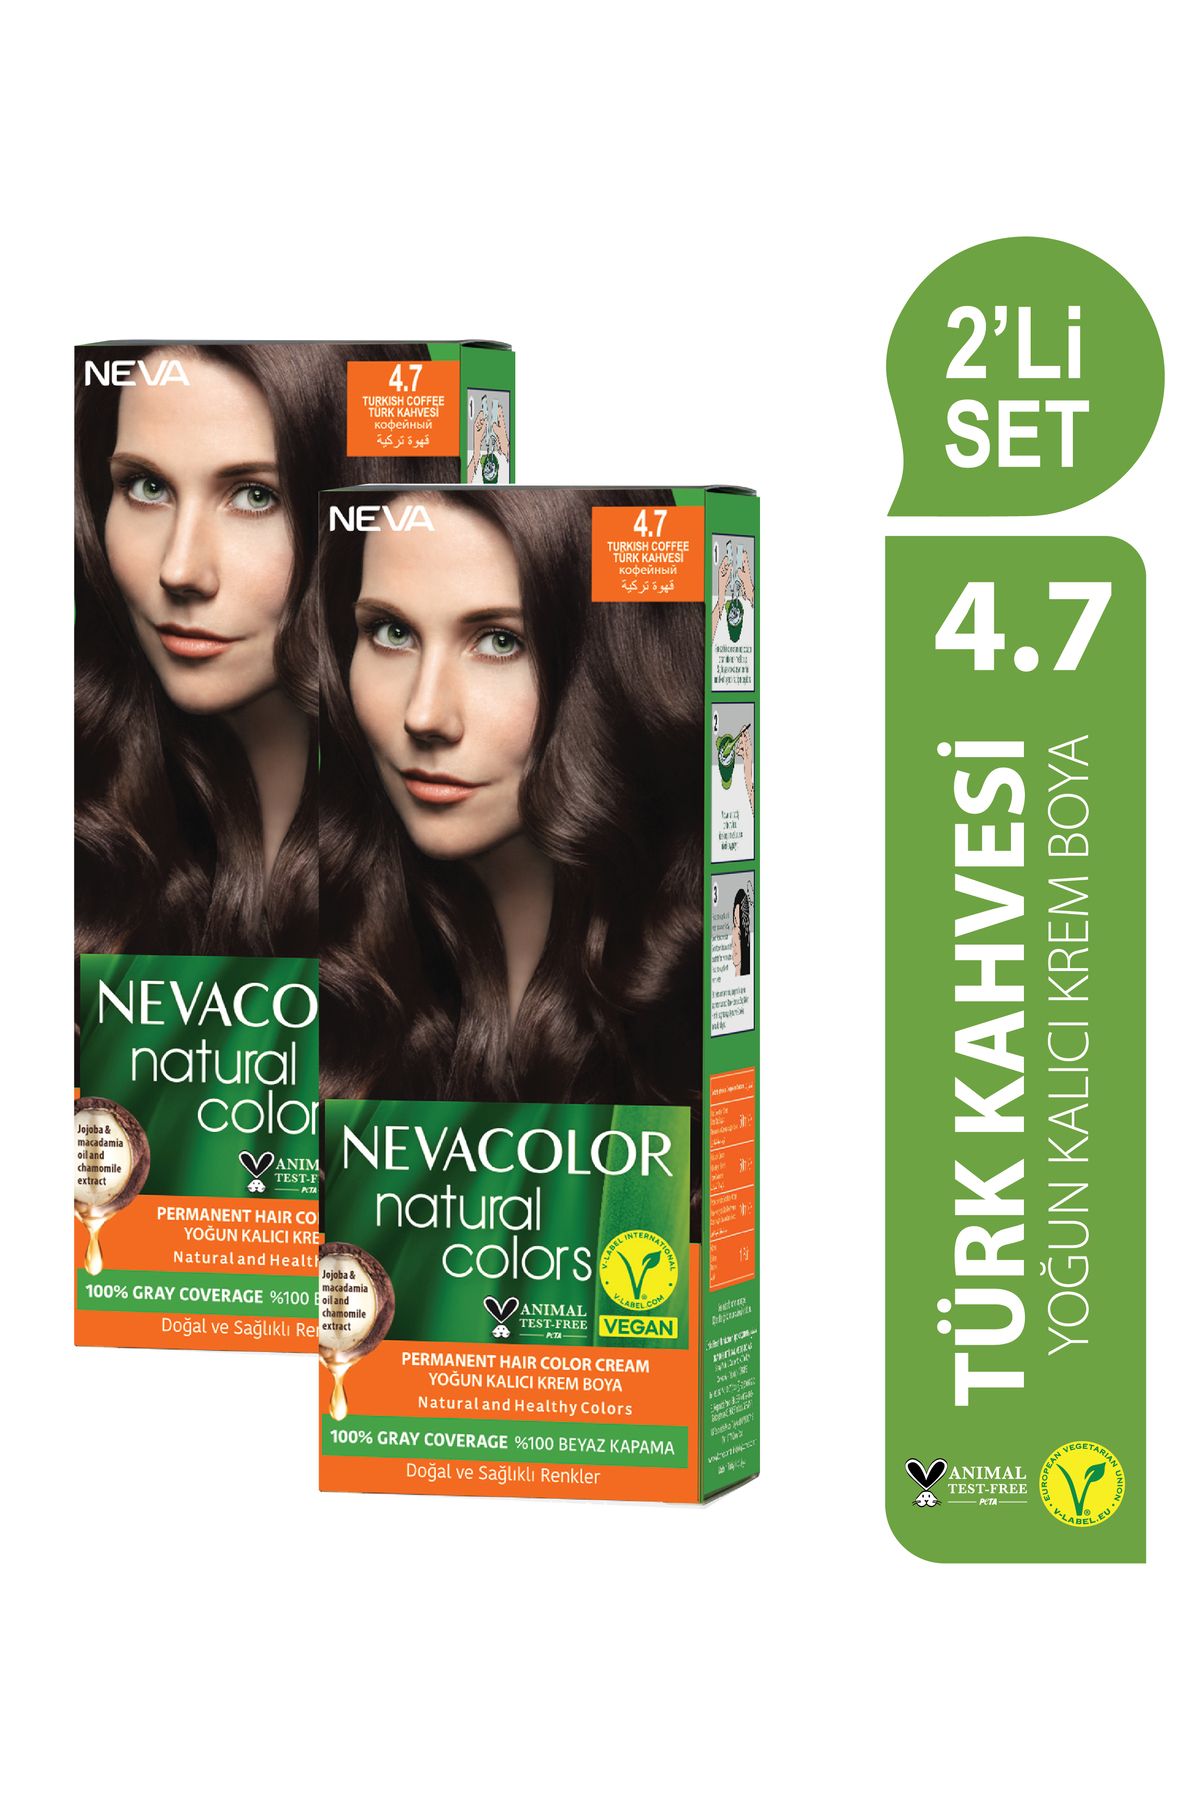 Neva Color Natural Colors 2'Lİ SET 4.7 TÜRK KAHVESİ Kalıcı Krem Saç Boyası Seti